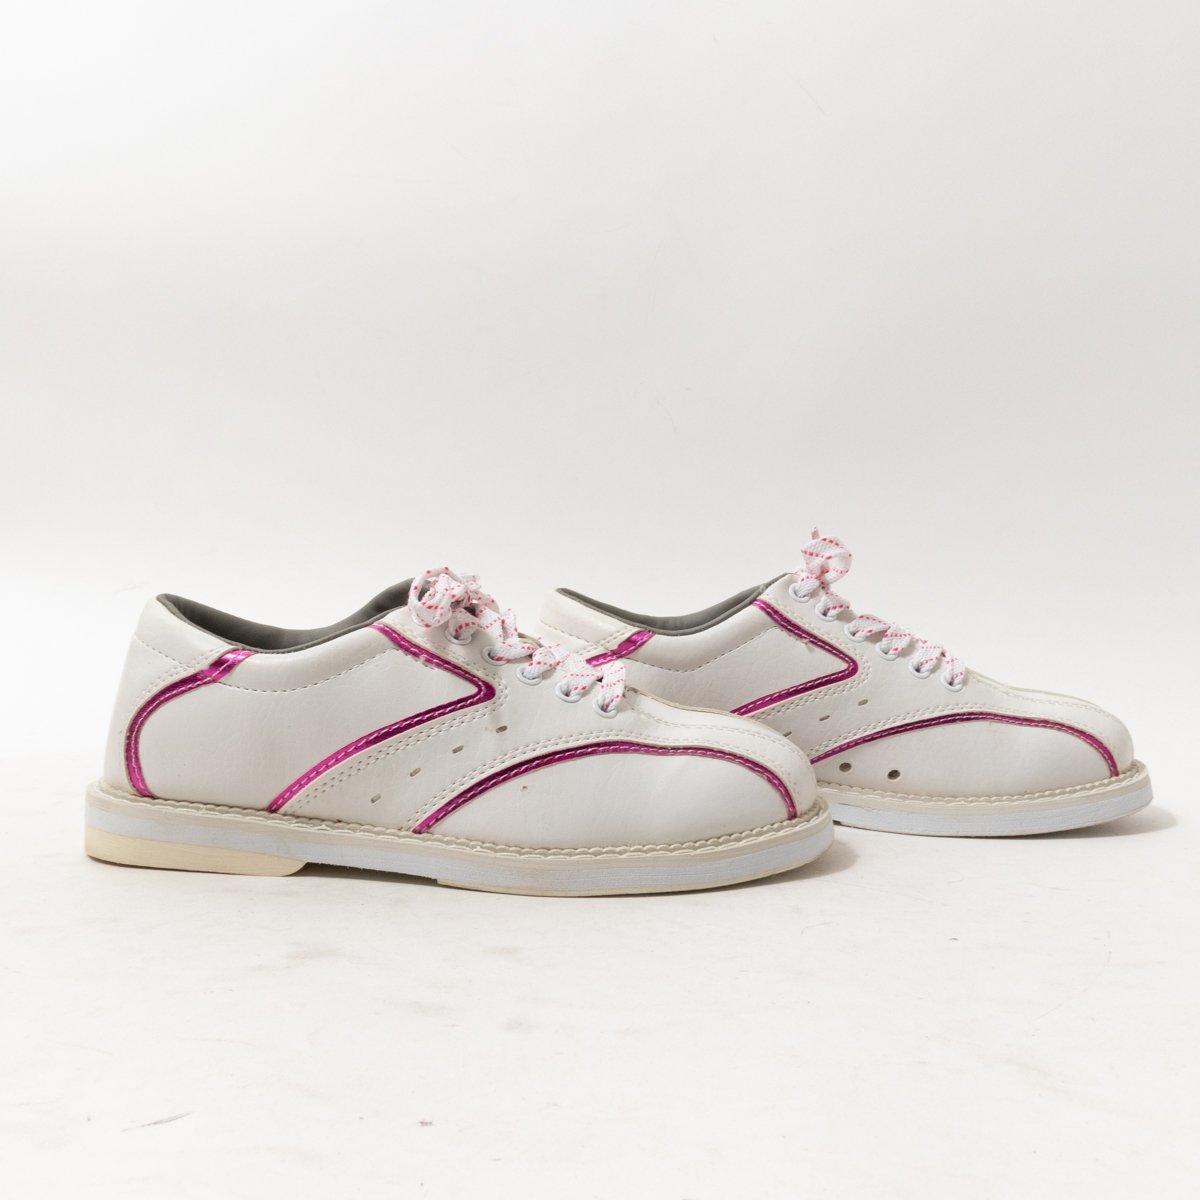 HI-SP высокий спорт боулинг обувь белый розовый 23cm кожа женский простой casual спорт салон обувь обувь 